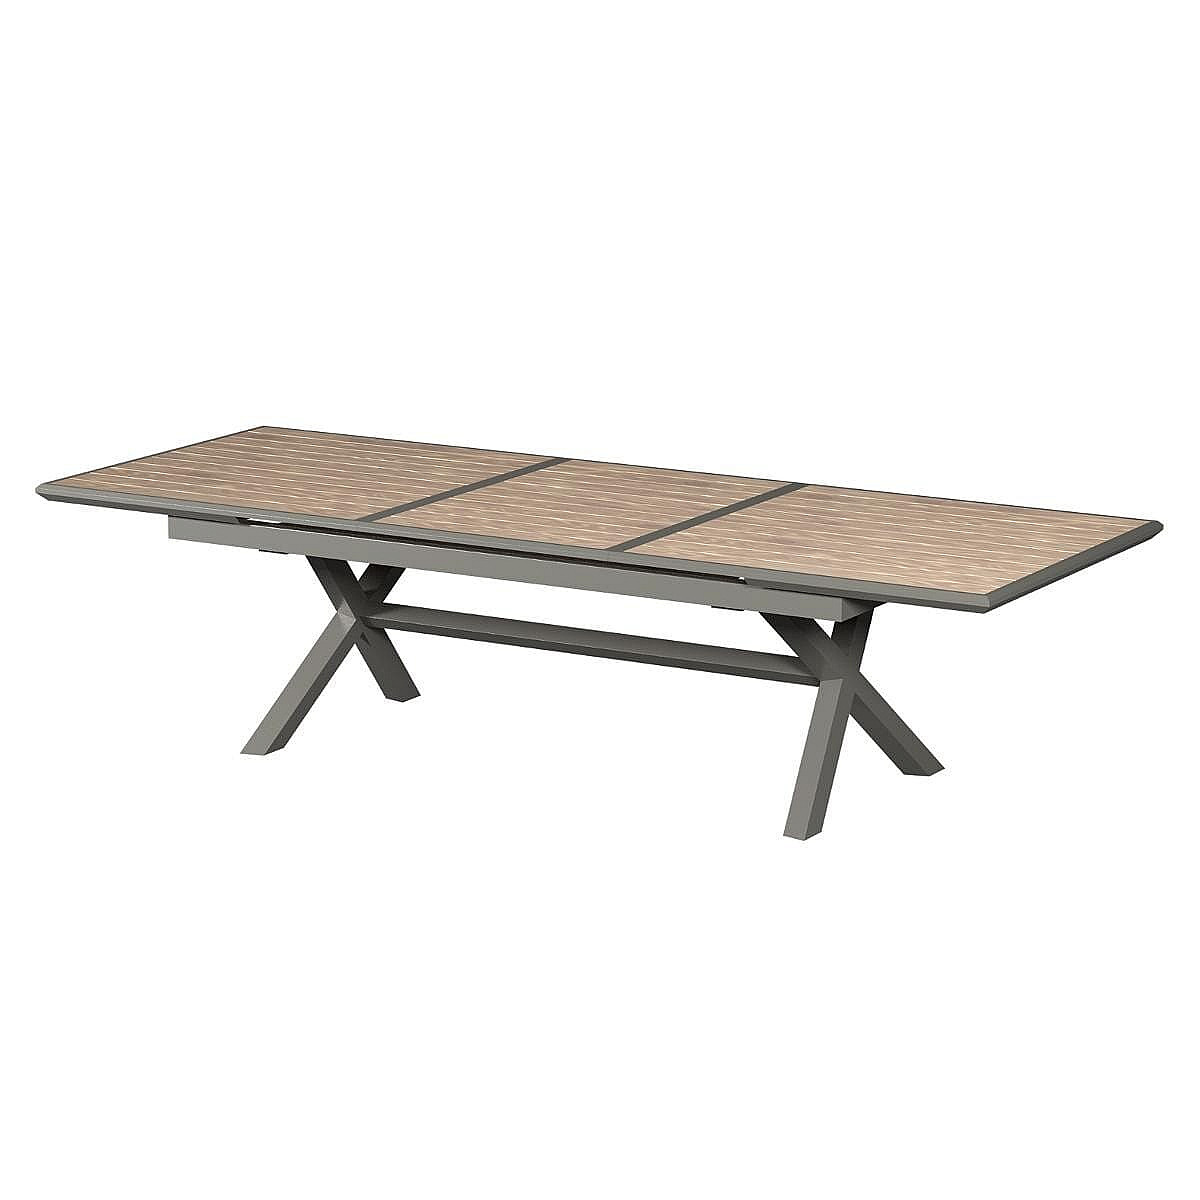 DEOKORK Hliníkový stůl VERONA 250/330 cm (šedo-hnědý/medová)